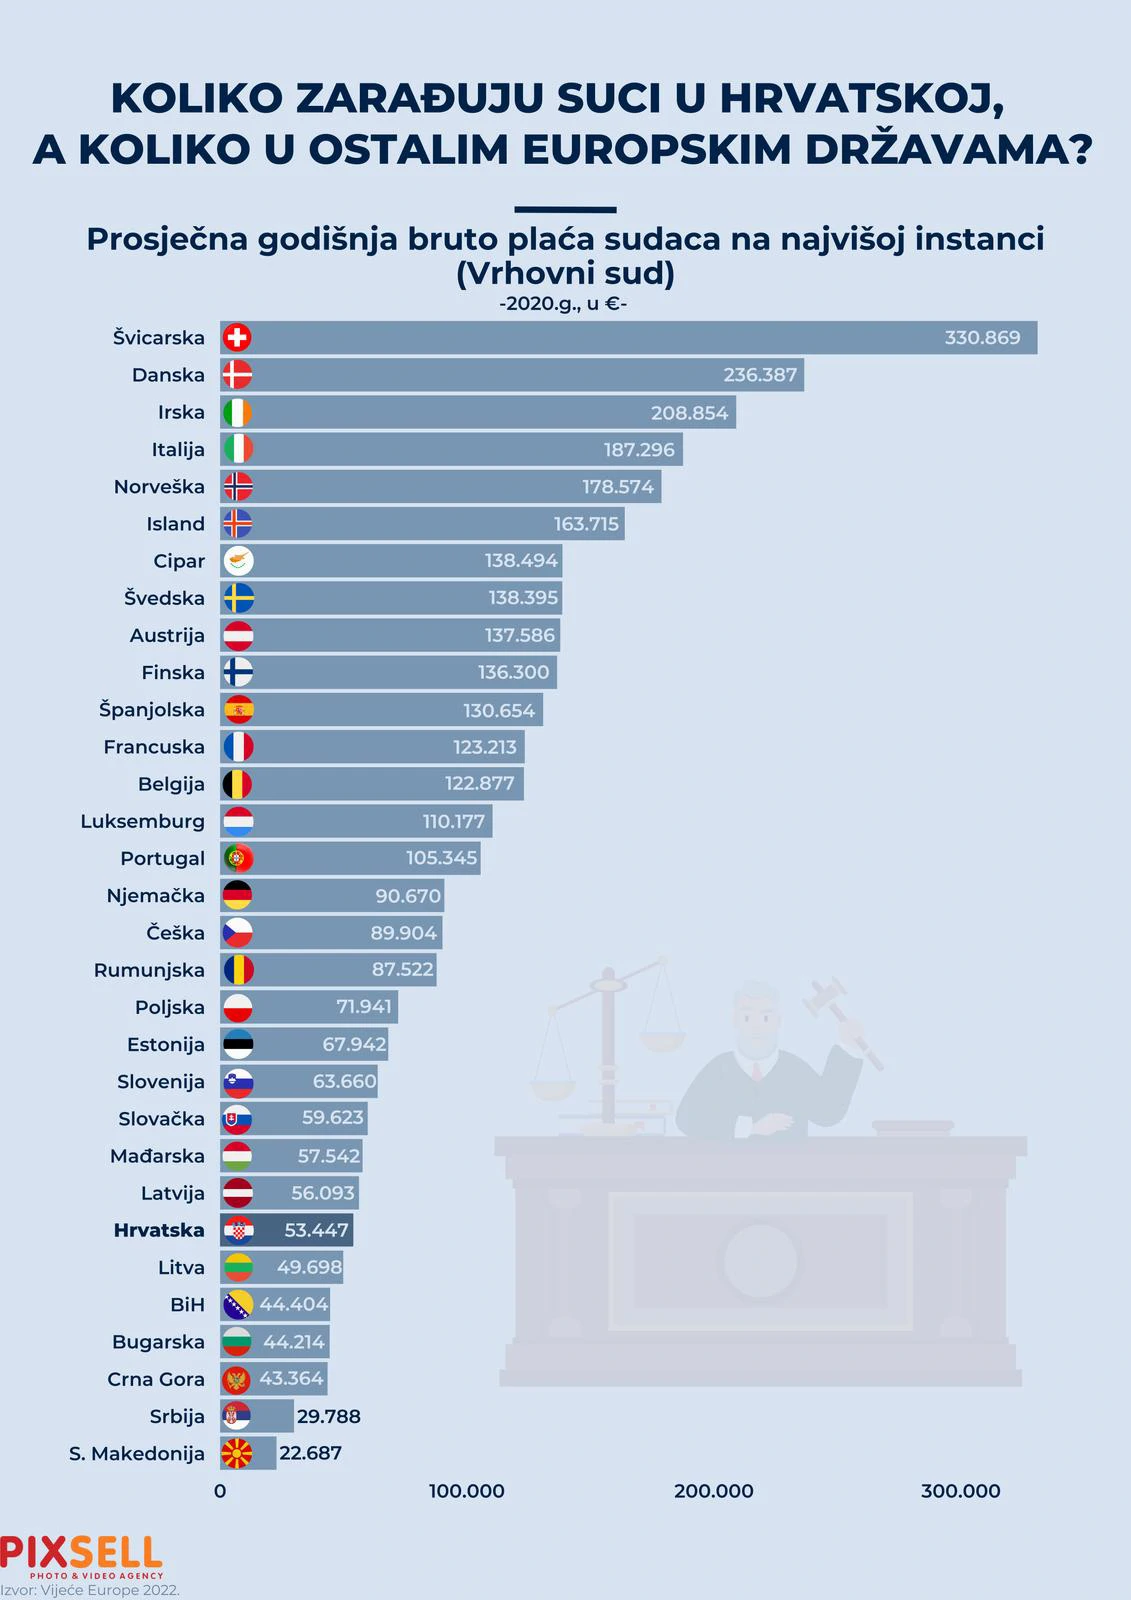  Infografika prikazuje prosječnu godišnju plaću sudaca na početku karijere u Hrvatskoj i u zemljama EU